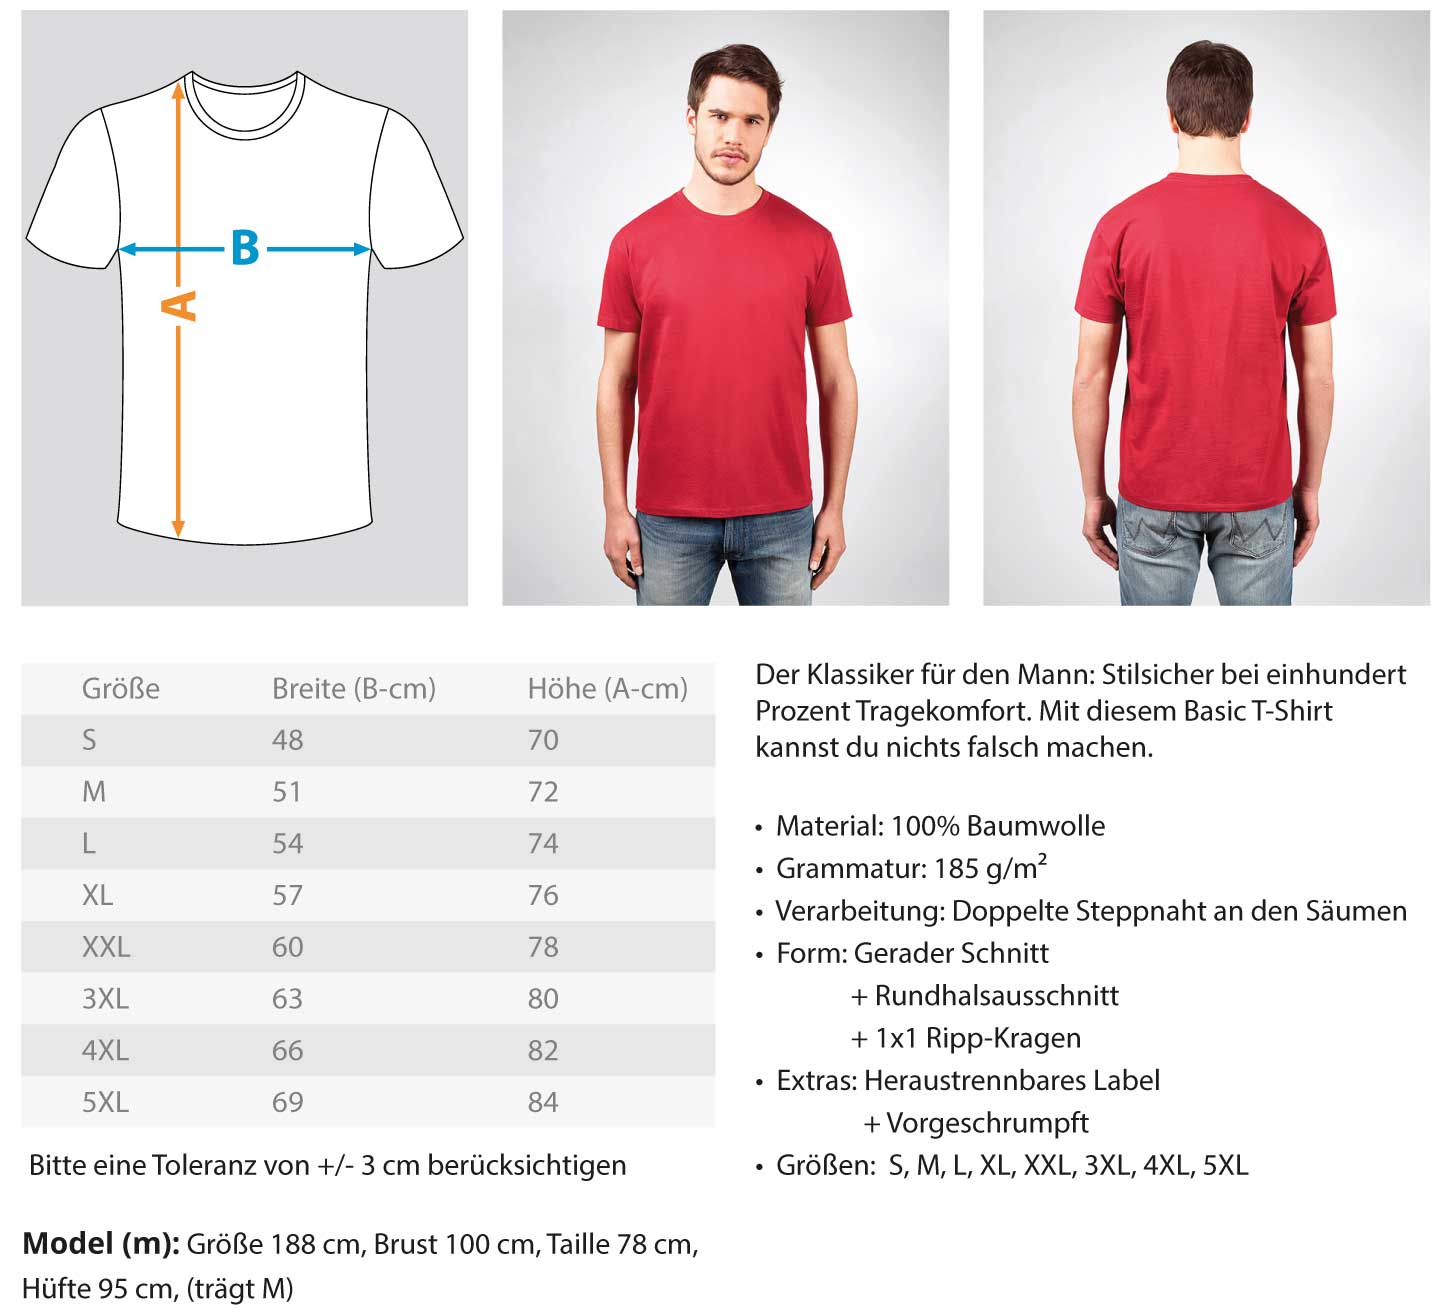 Fliesenleger - Herren Shirt €24.95 Handwerkerfashion